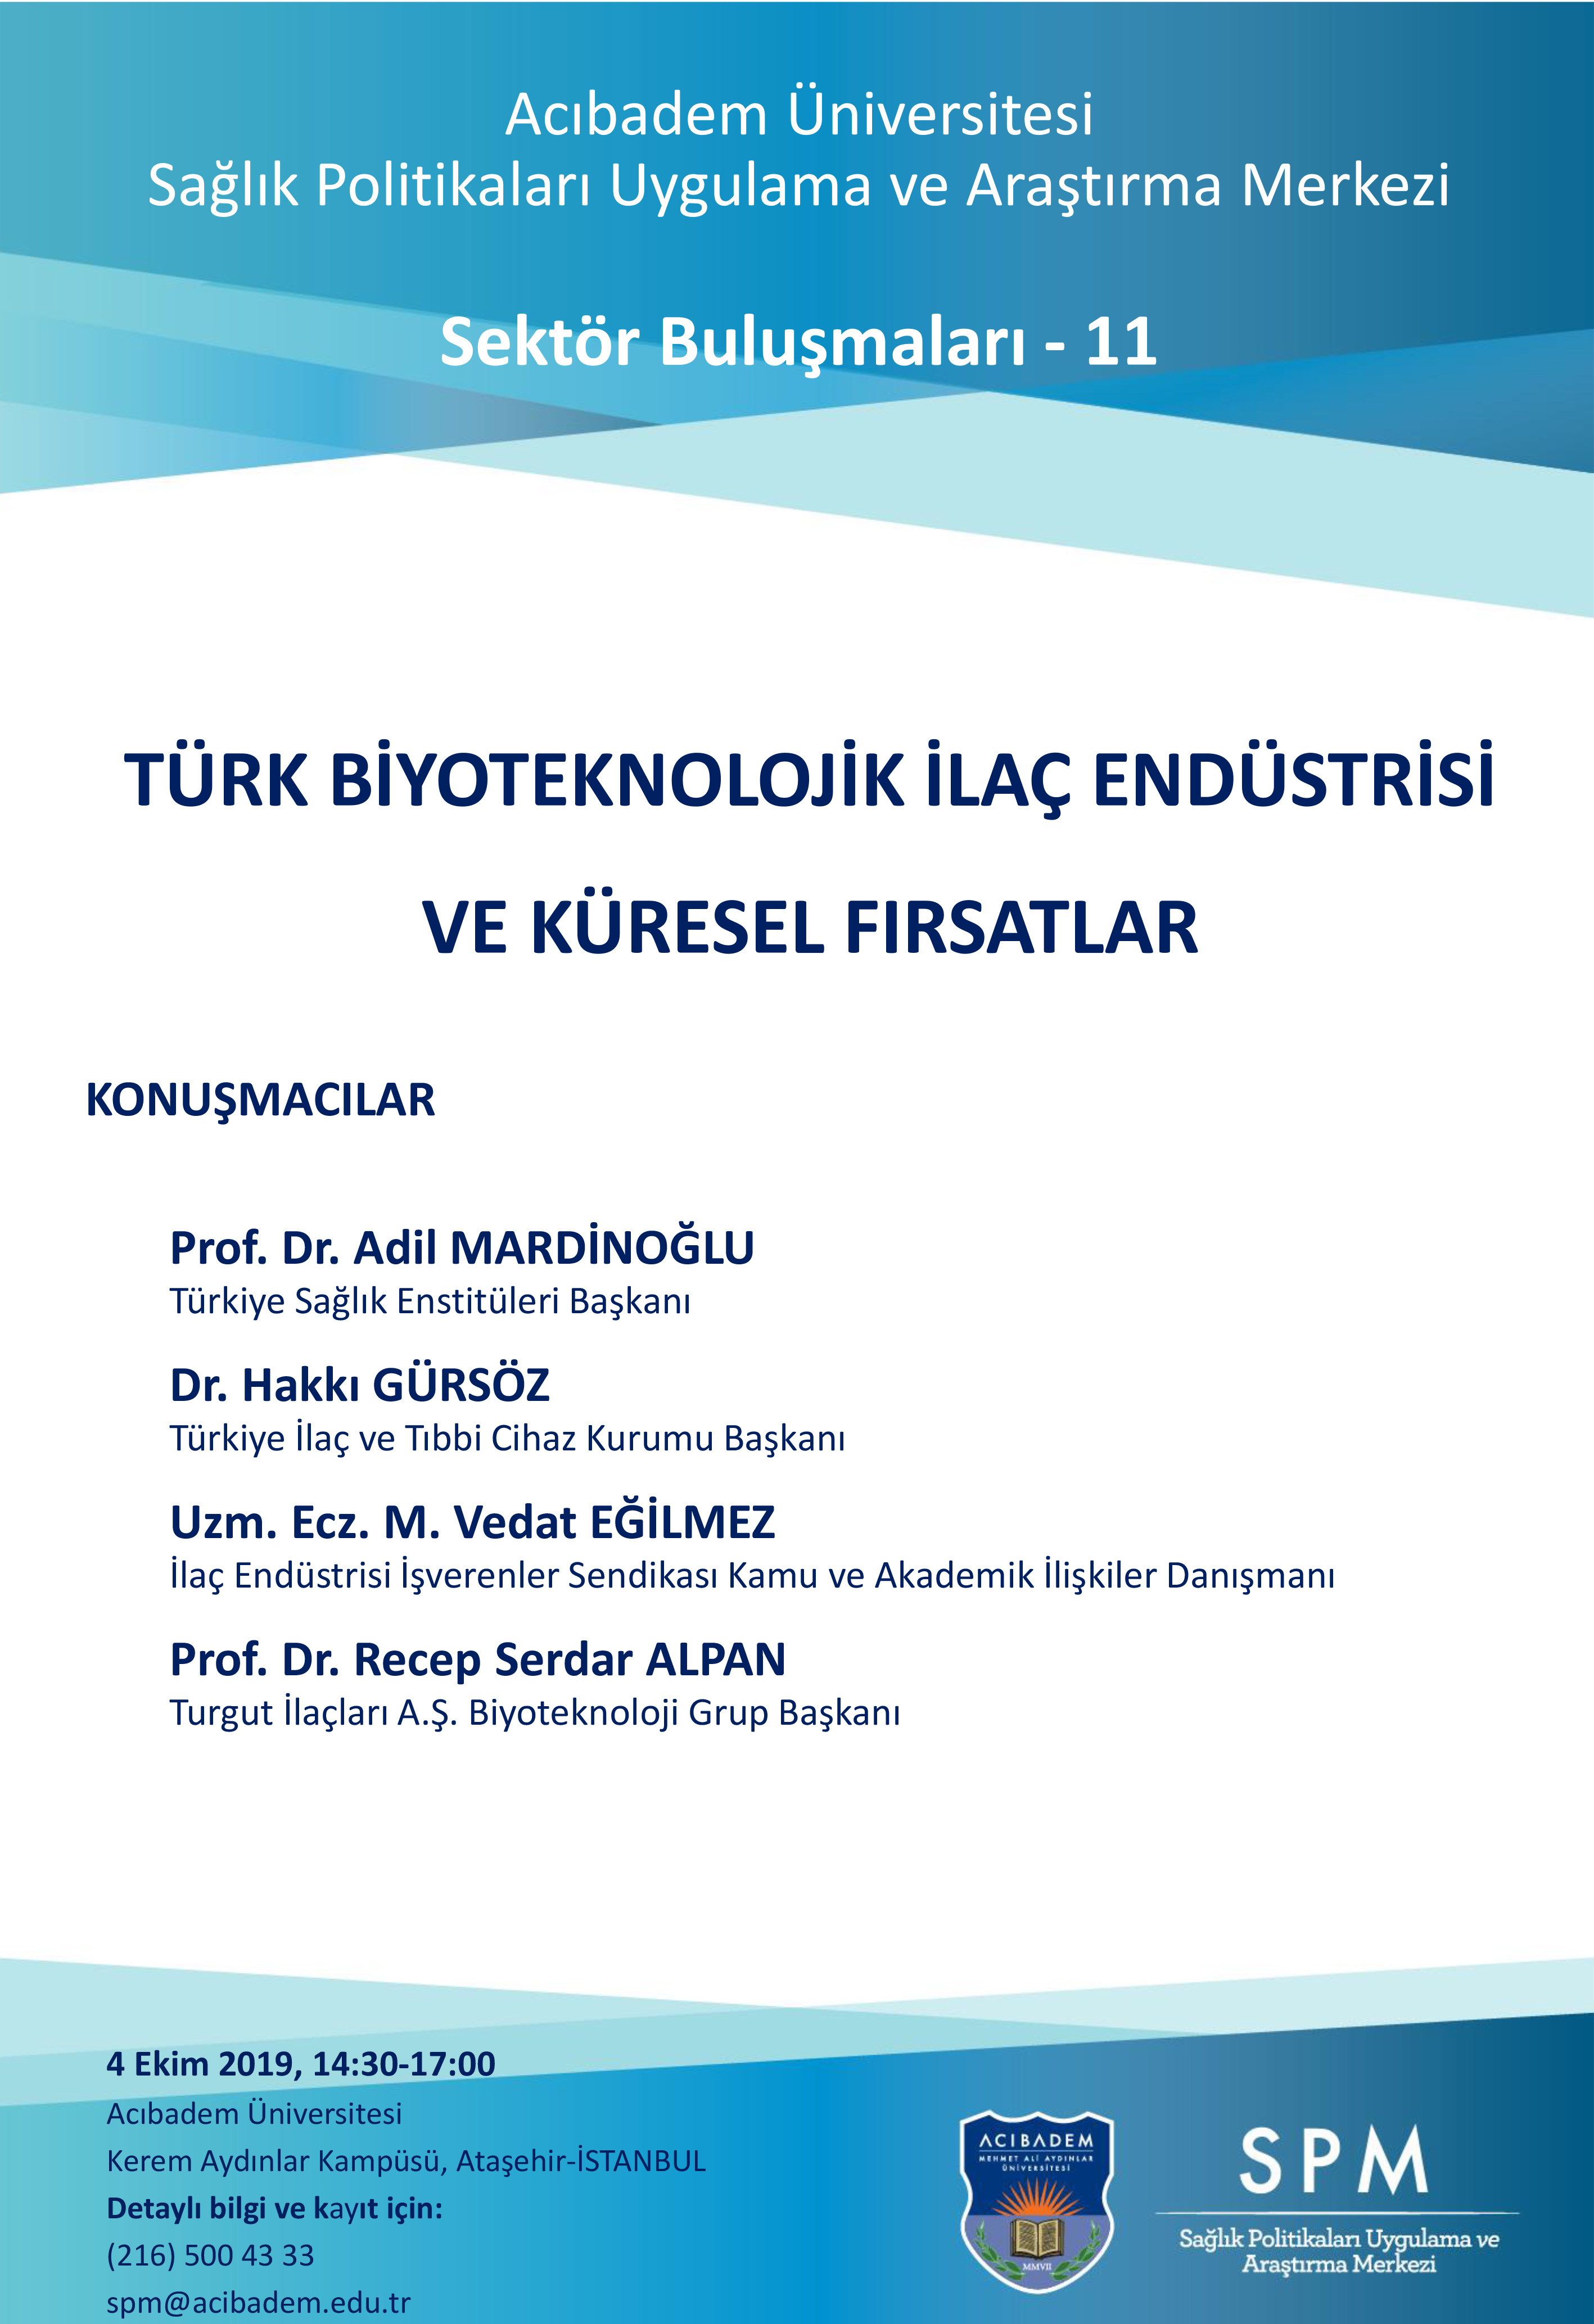 Sektör Buluşmaları-11: Türk Biyoteknolojik İlaç Endüstrisi ve Küresel Fırsatlar